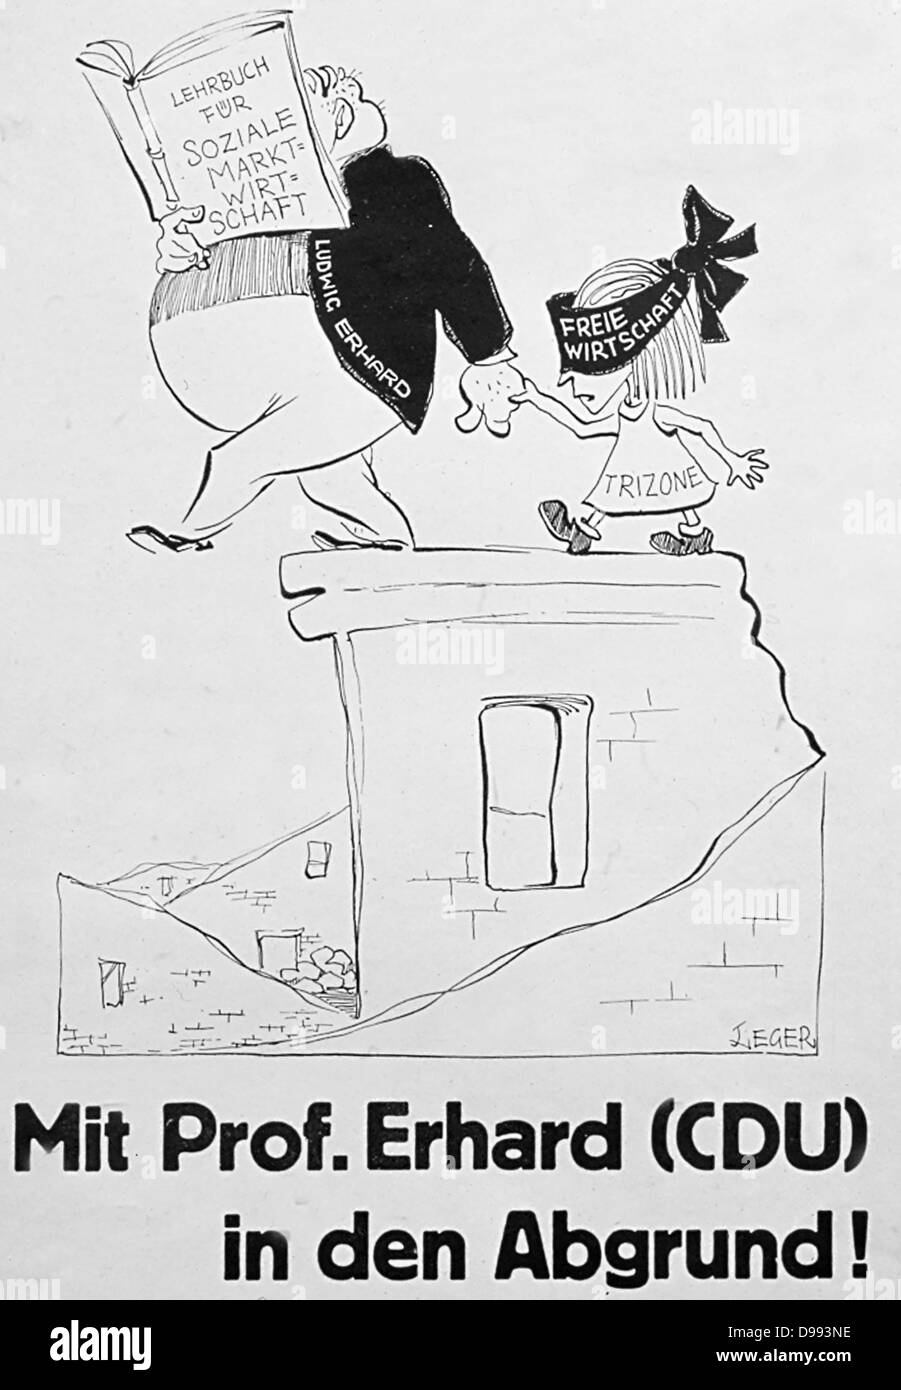 'Messa Pof.Erhard (CDU) in den abgrund' (con il POF.Erhard (CDU) nell abisso). Un cartoon politici degli anni sessanta raffigurante il Cancelliere Erhard prendendo la Germania nella CE zona di libero scambio. Foto Stock